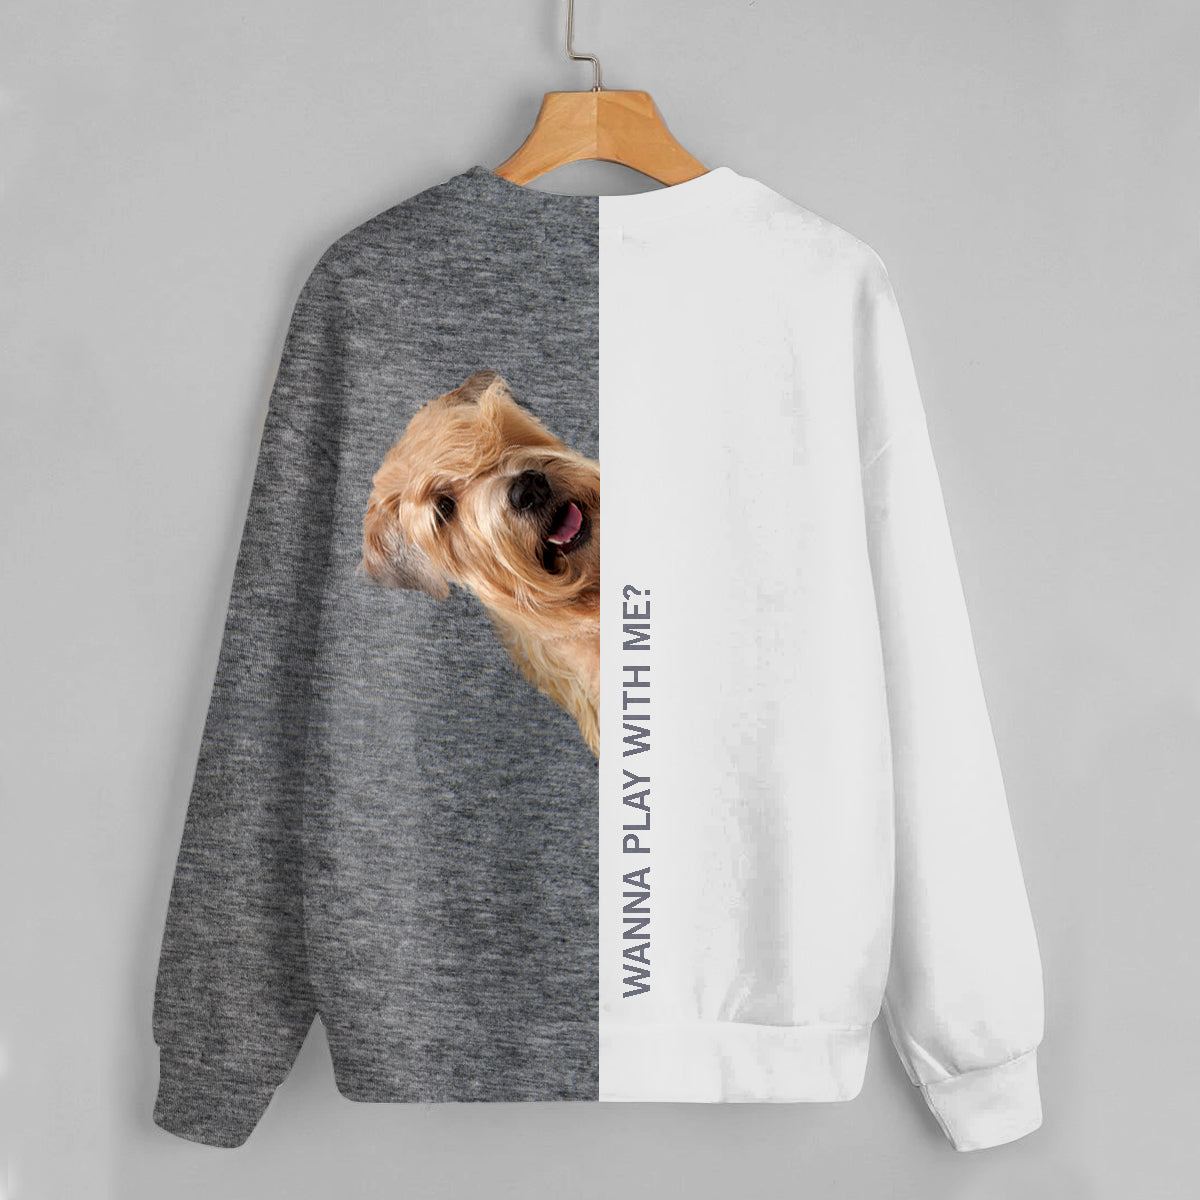 Lustige glückliche Zeit - Wheaten Terrier Sweatshirt V1